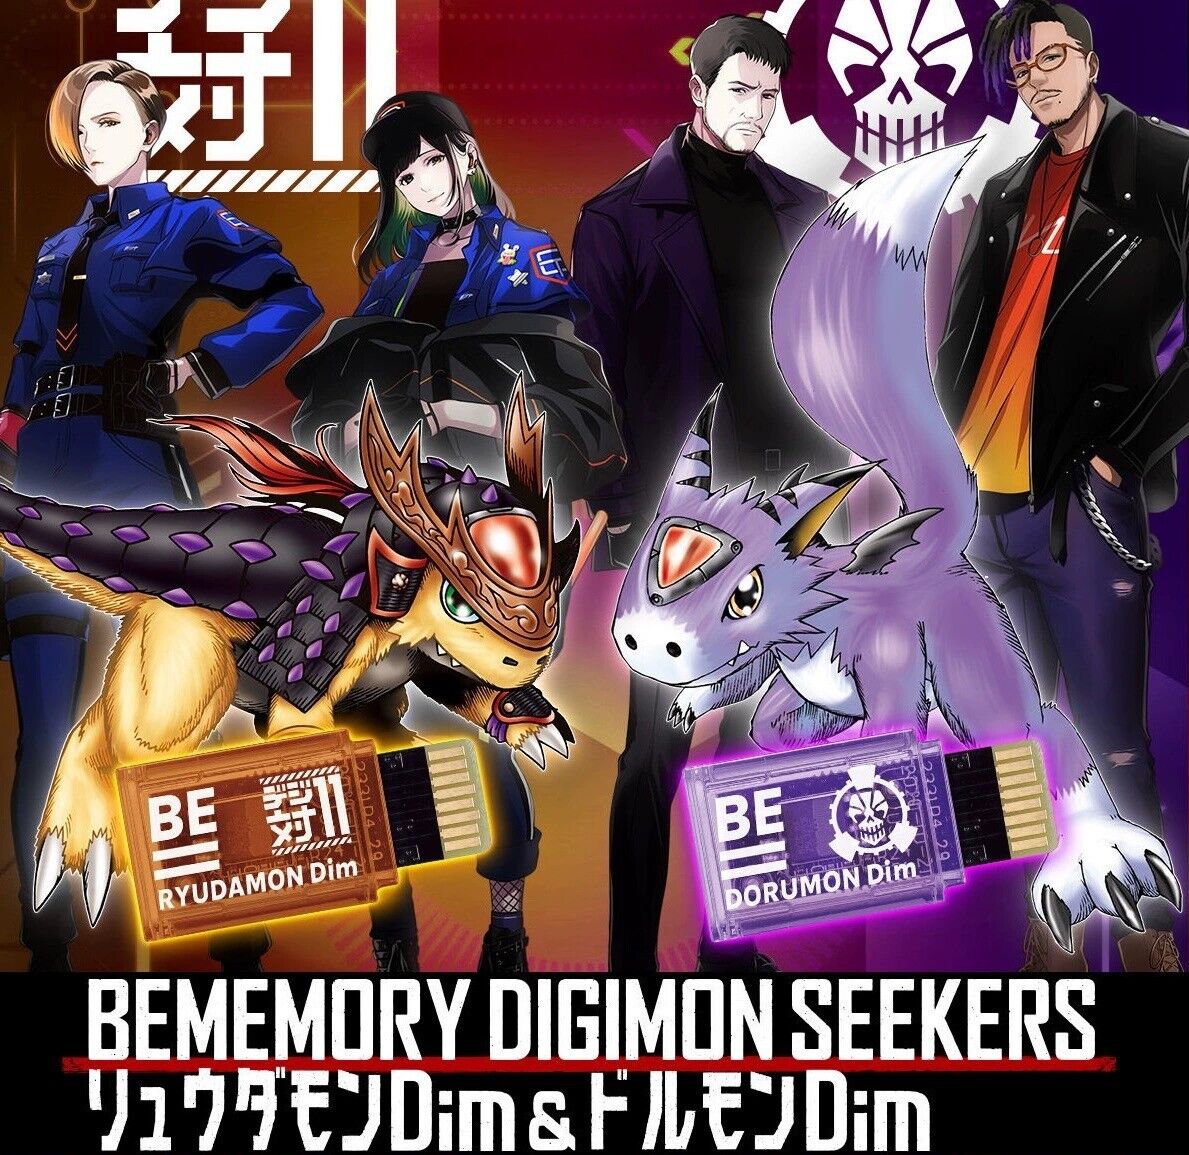 BEMEMORY DIGIMON SEEKERS Ryuudamon & Dorumon Dim BEMEMORY Set New & Sealed